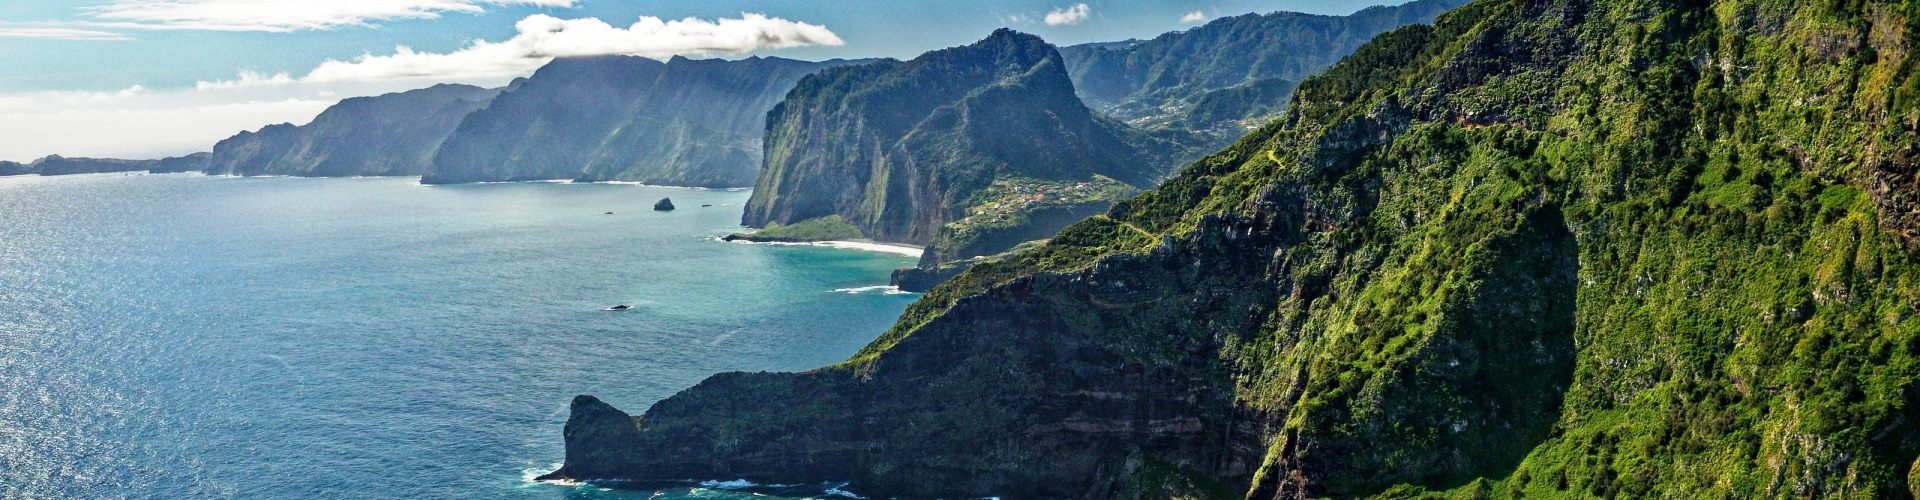 12 Belos Lugares para Visitar na Ilha da Madeira